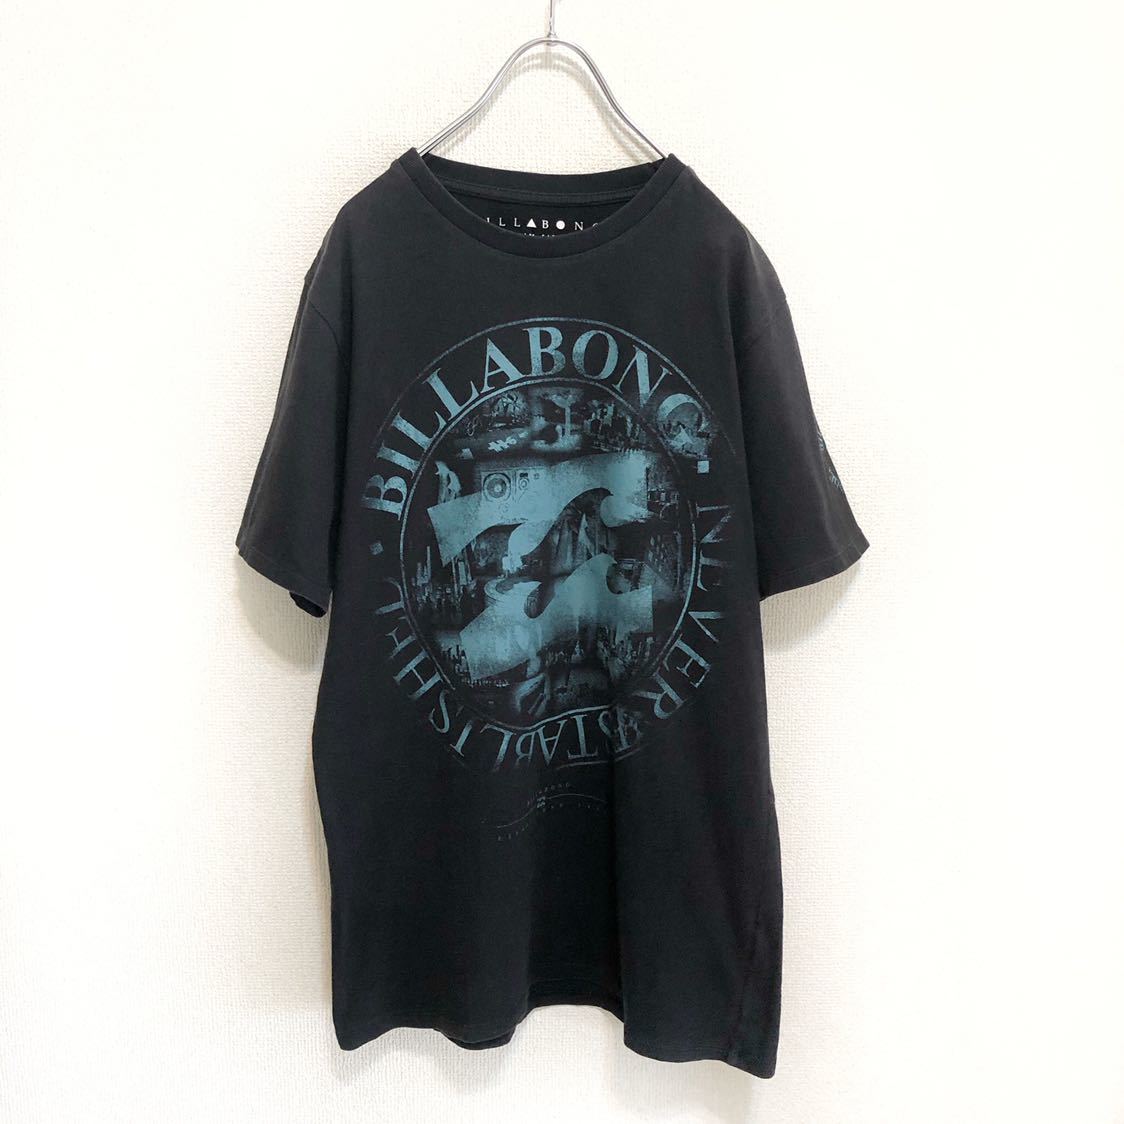 【送料無料】BILLABONG ビラボン★ロゴプリント 半袖Tシャツ ネイビー 紺